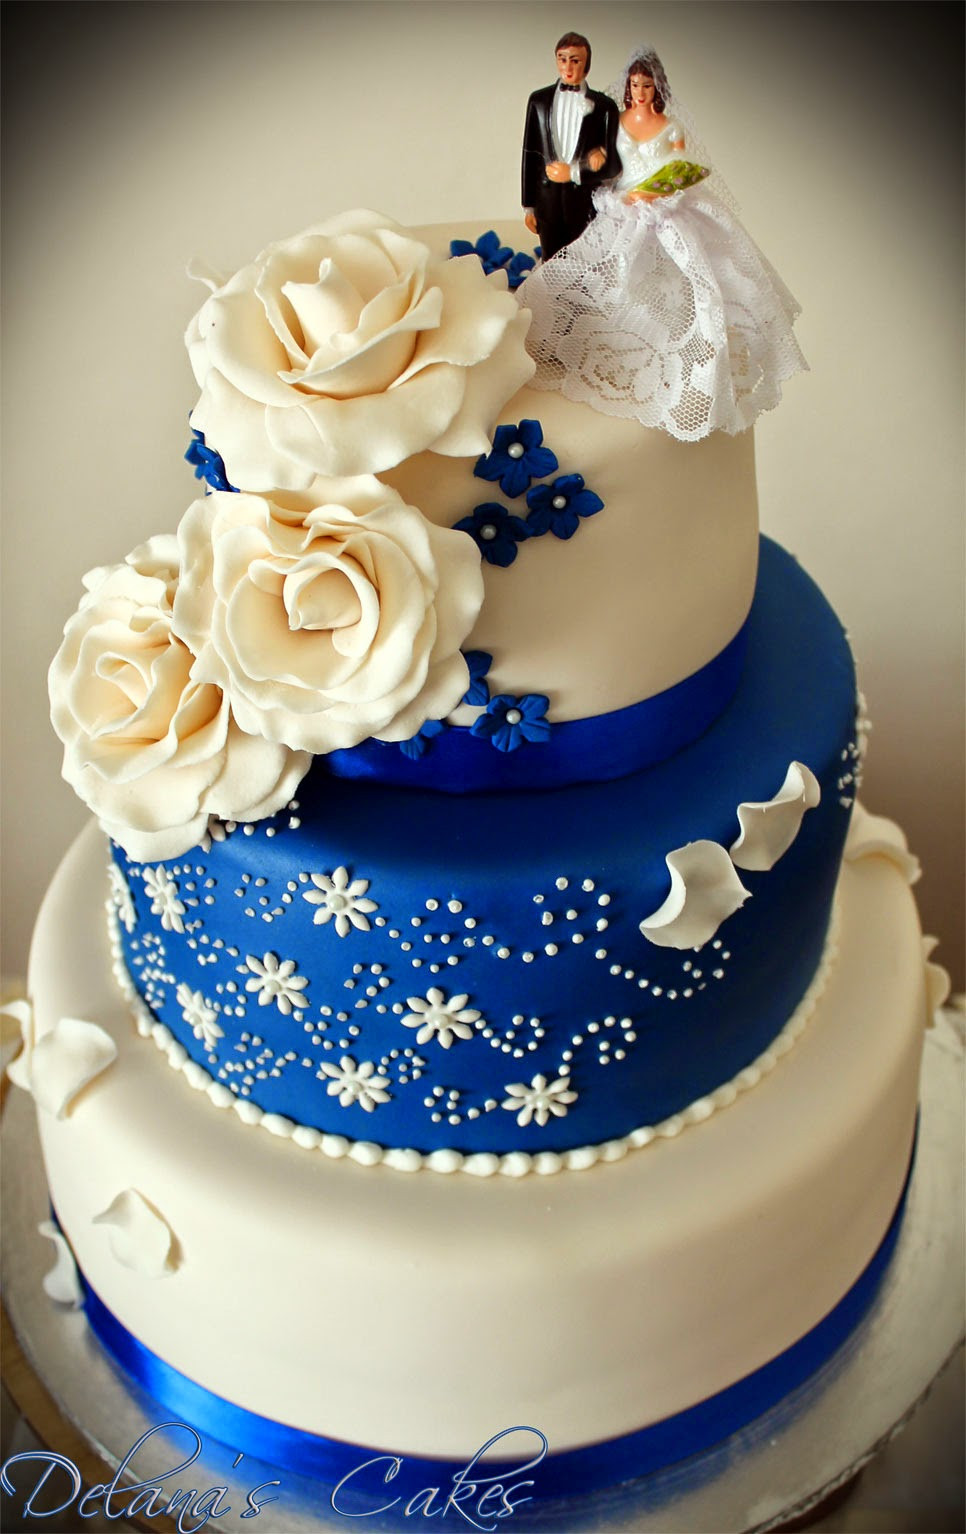 Royal Blue Wedding Cakes
 Delana s Cakes Royal Blue and White Wedding Cake